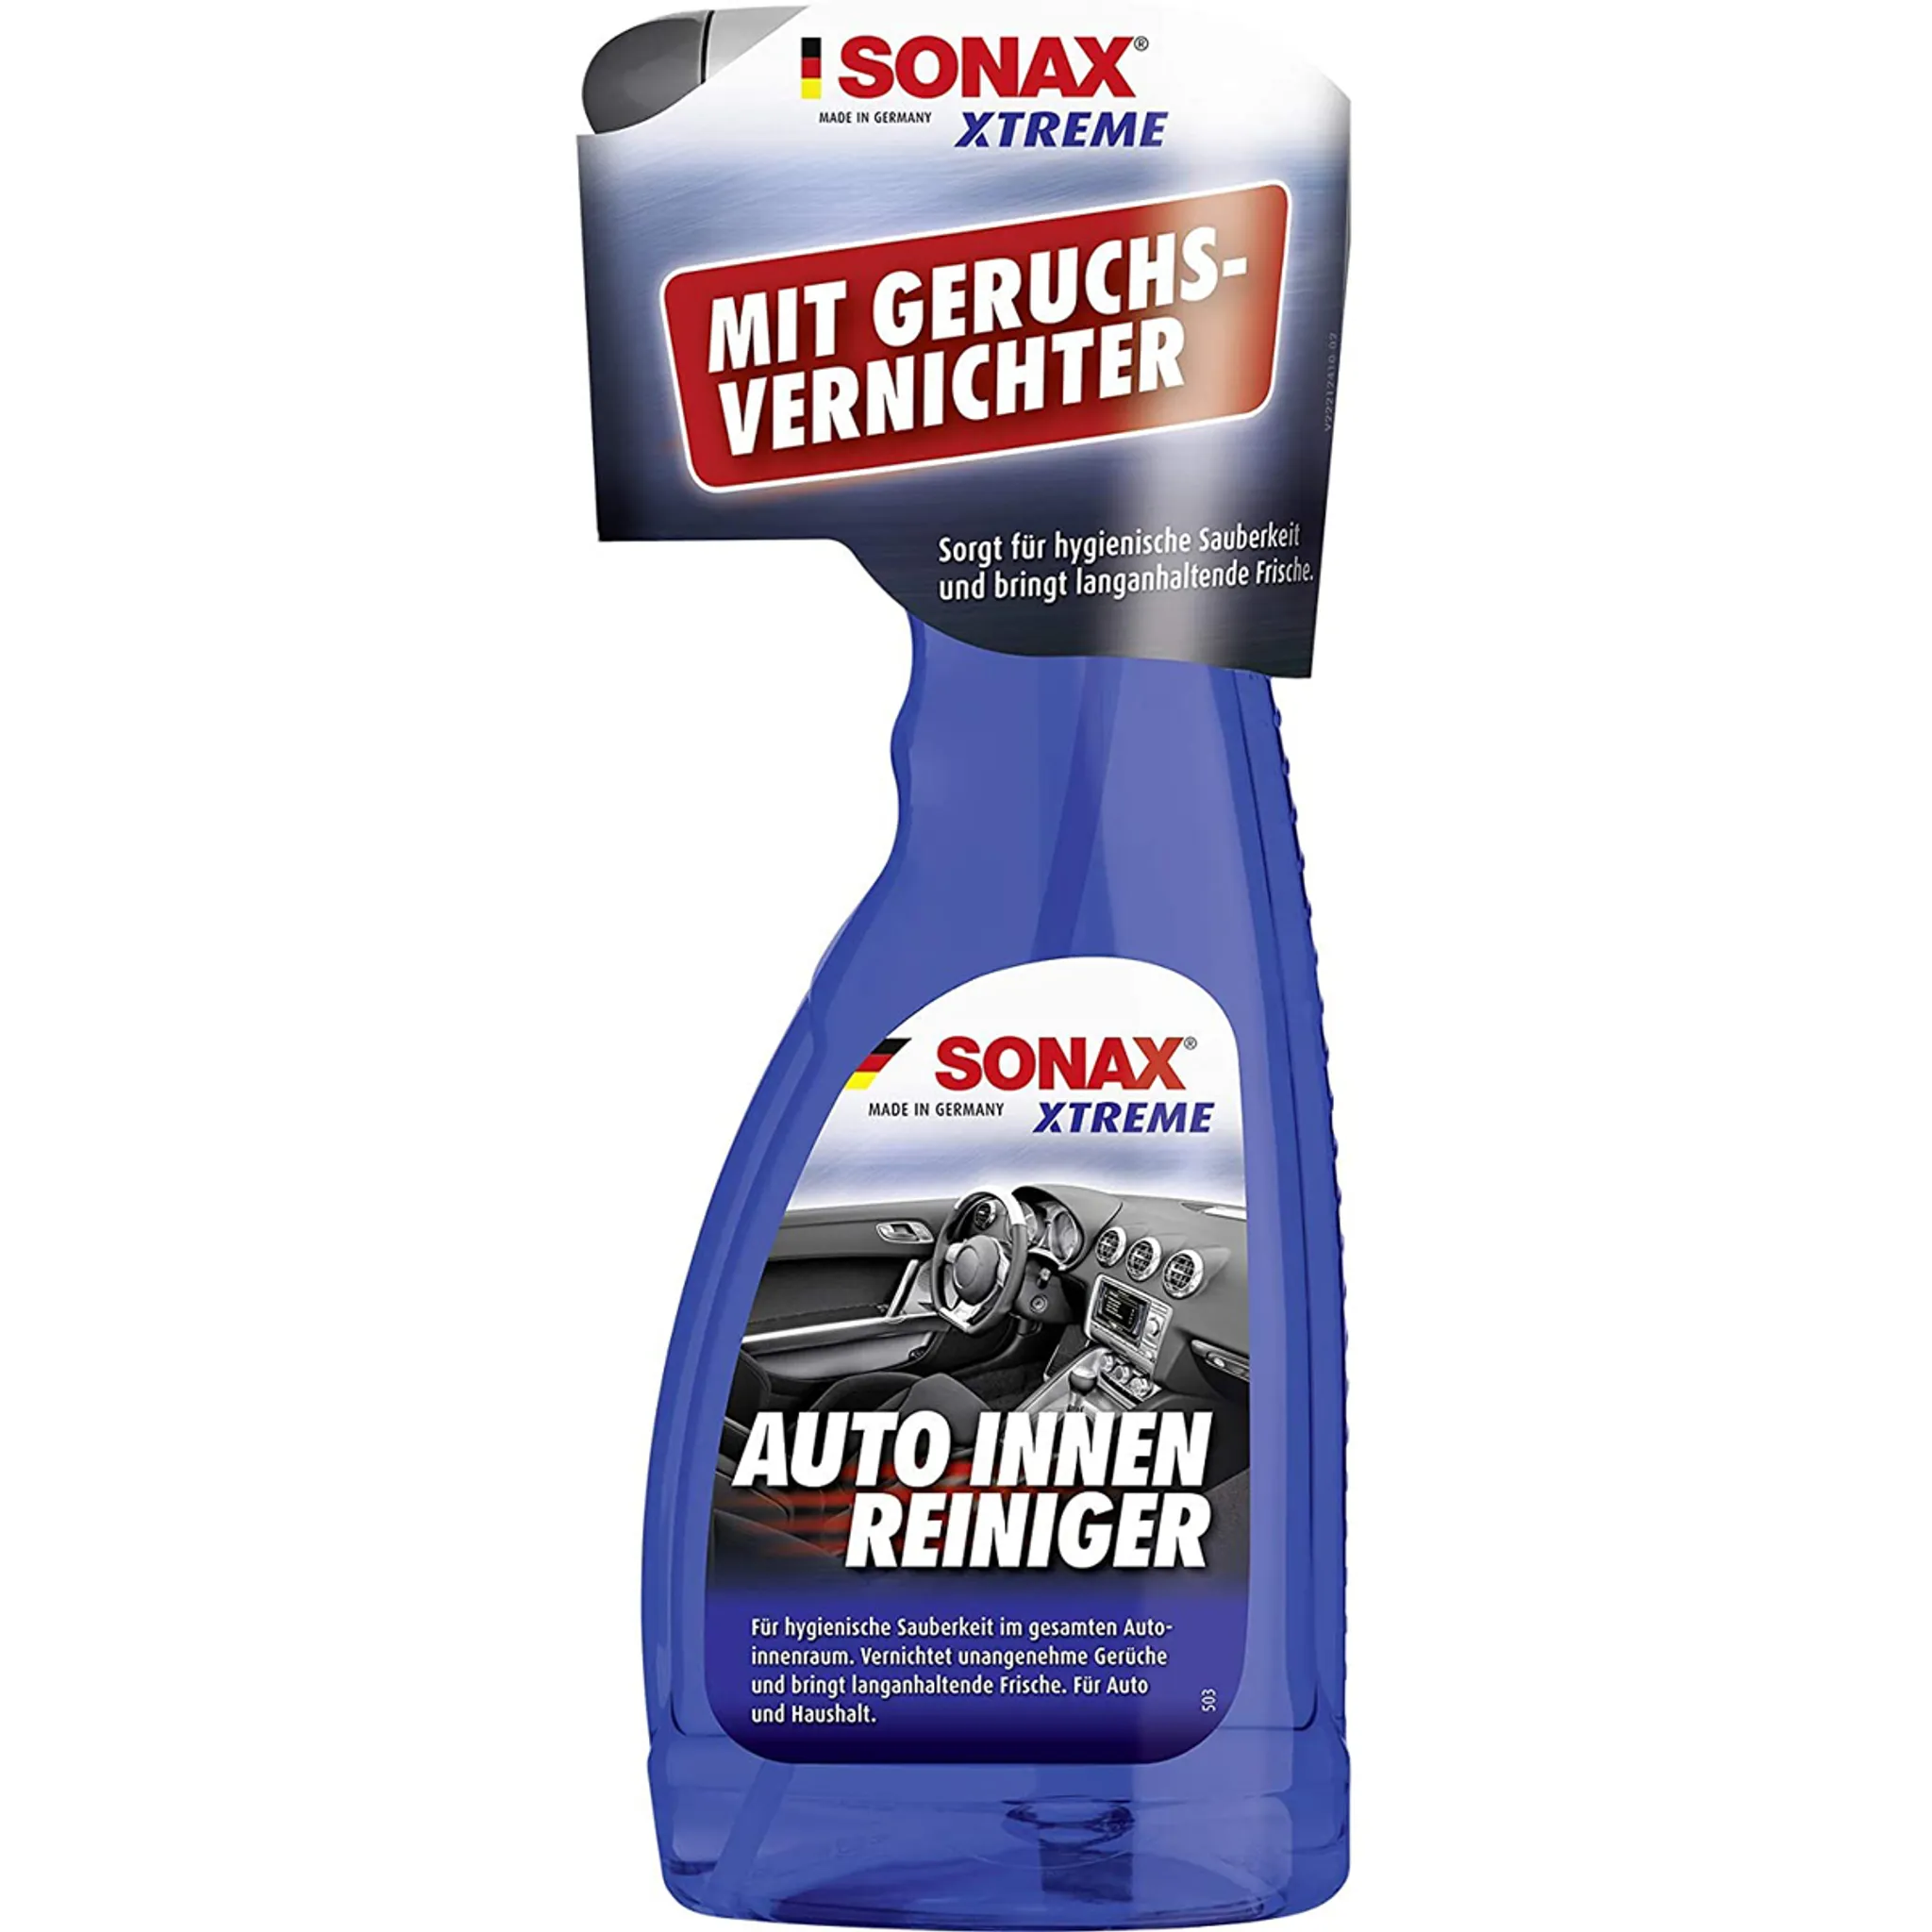 Sonax Xtreme Polster- und Alcantara Reiniger 400ml - Autopflege